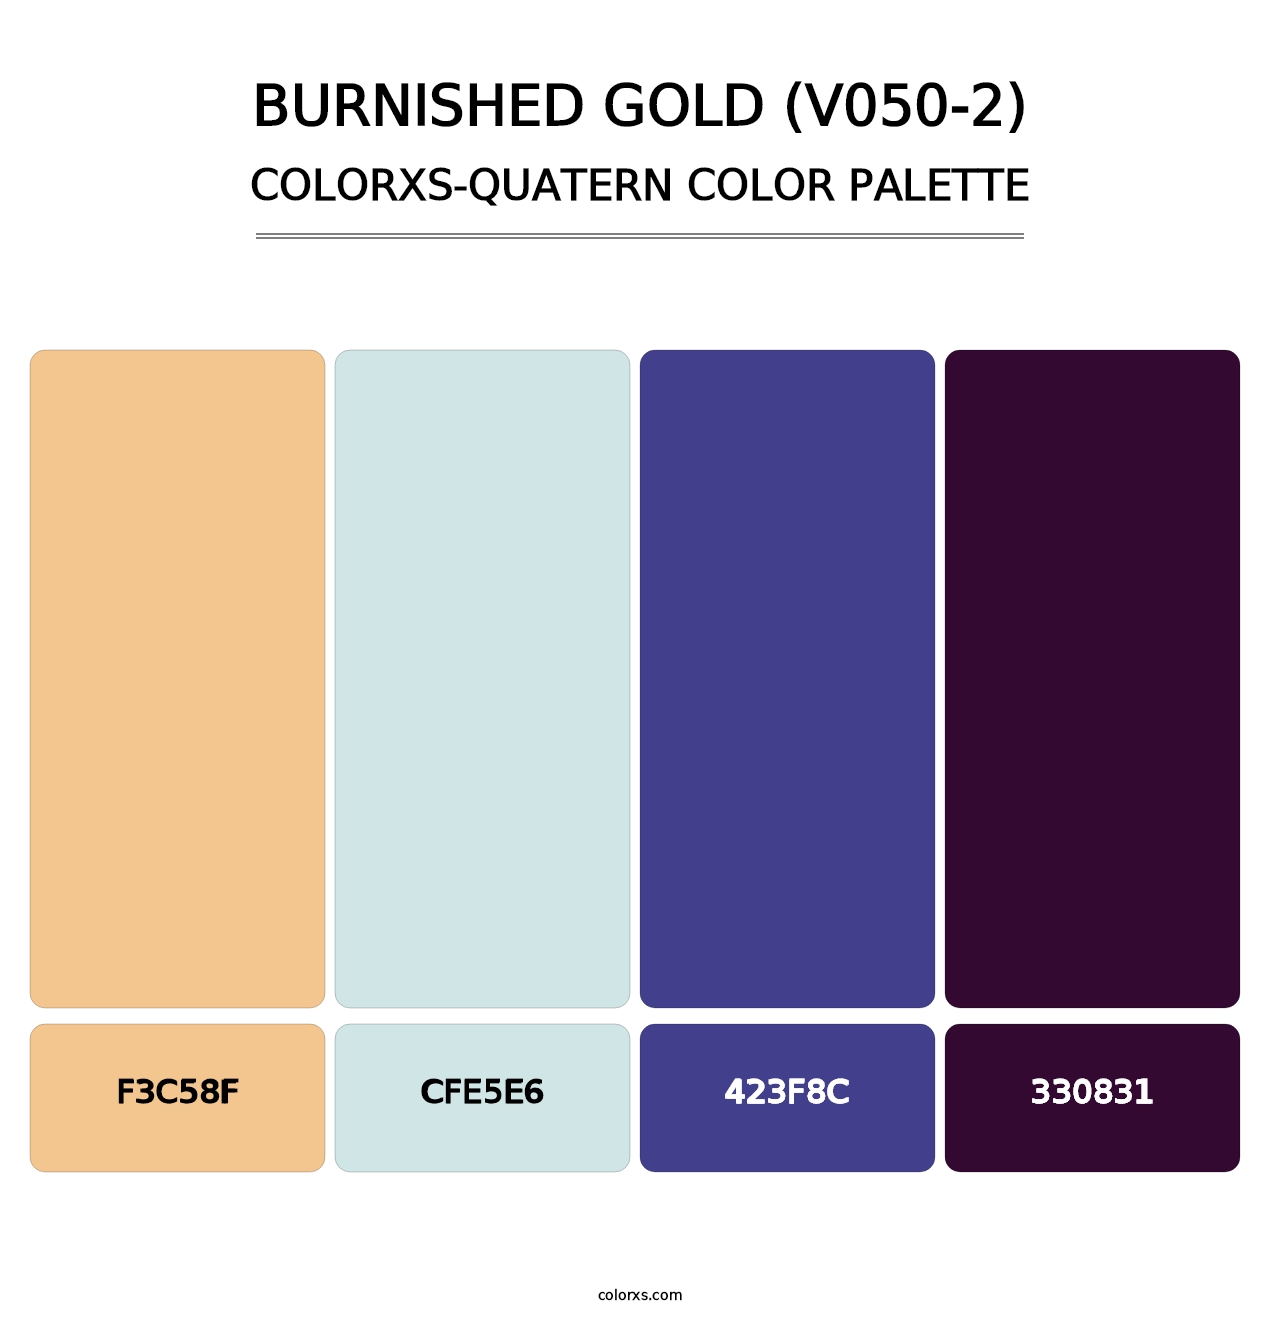 Burnished Gold (V050-2) - Colorxs Quatern Palette